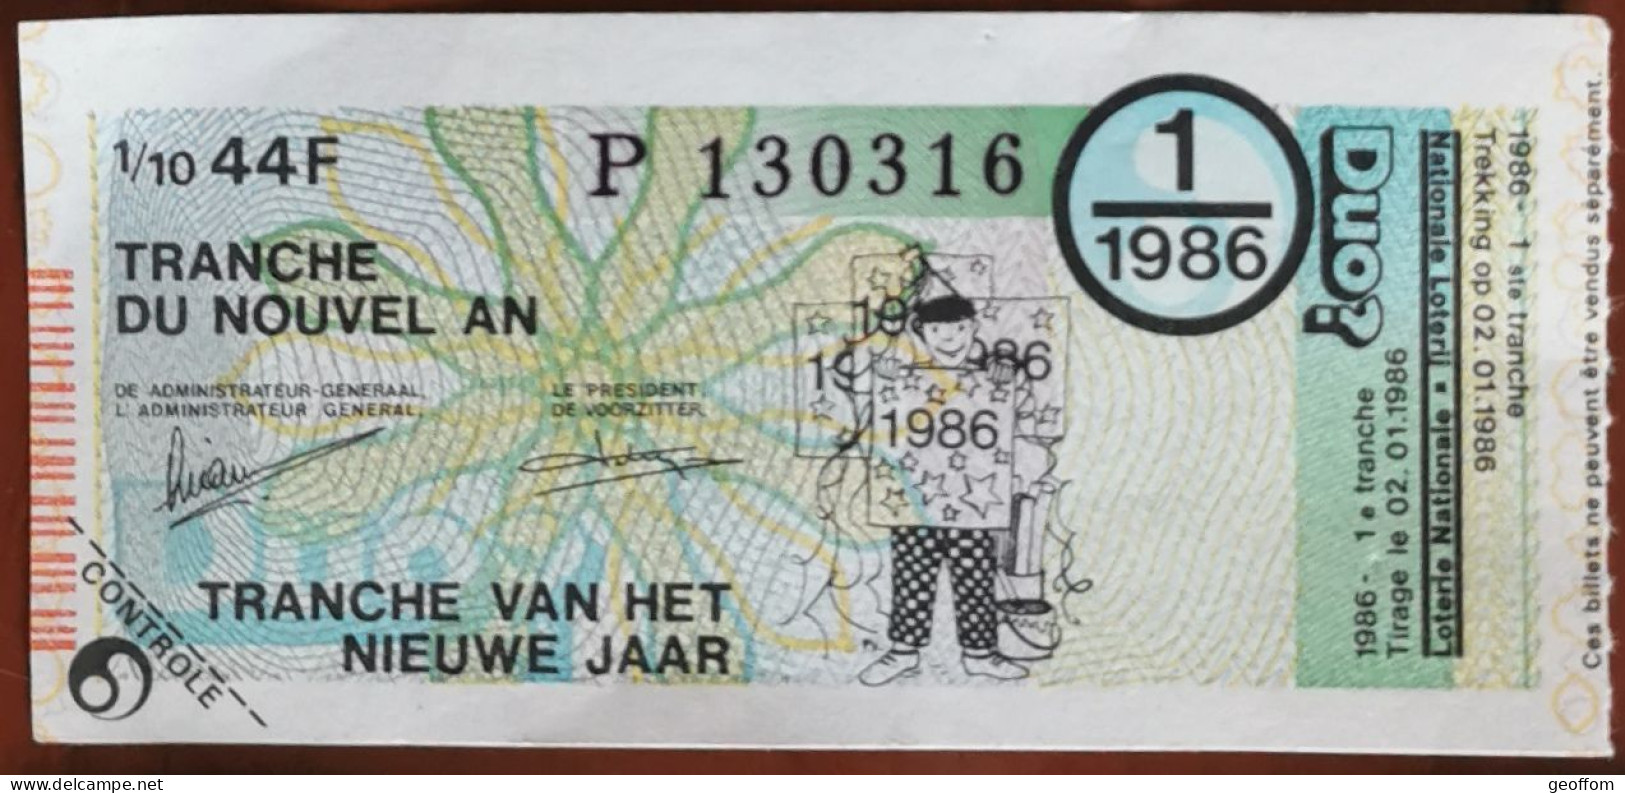 Billet De Loterie Nationale Belgique 1986 1er Tranche Du Nouvel An - 2-1-1986 - Billetes De Lotería